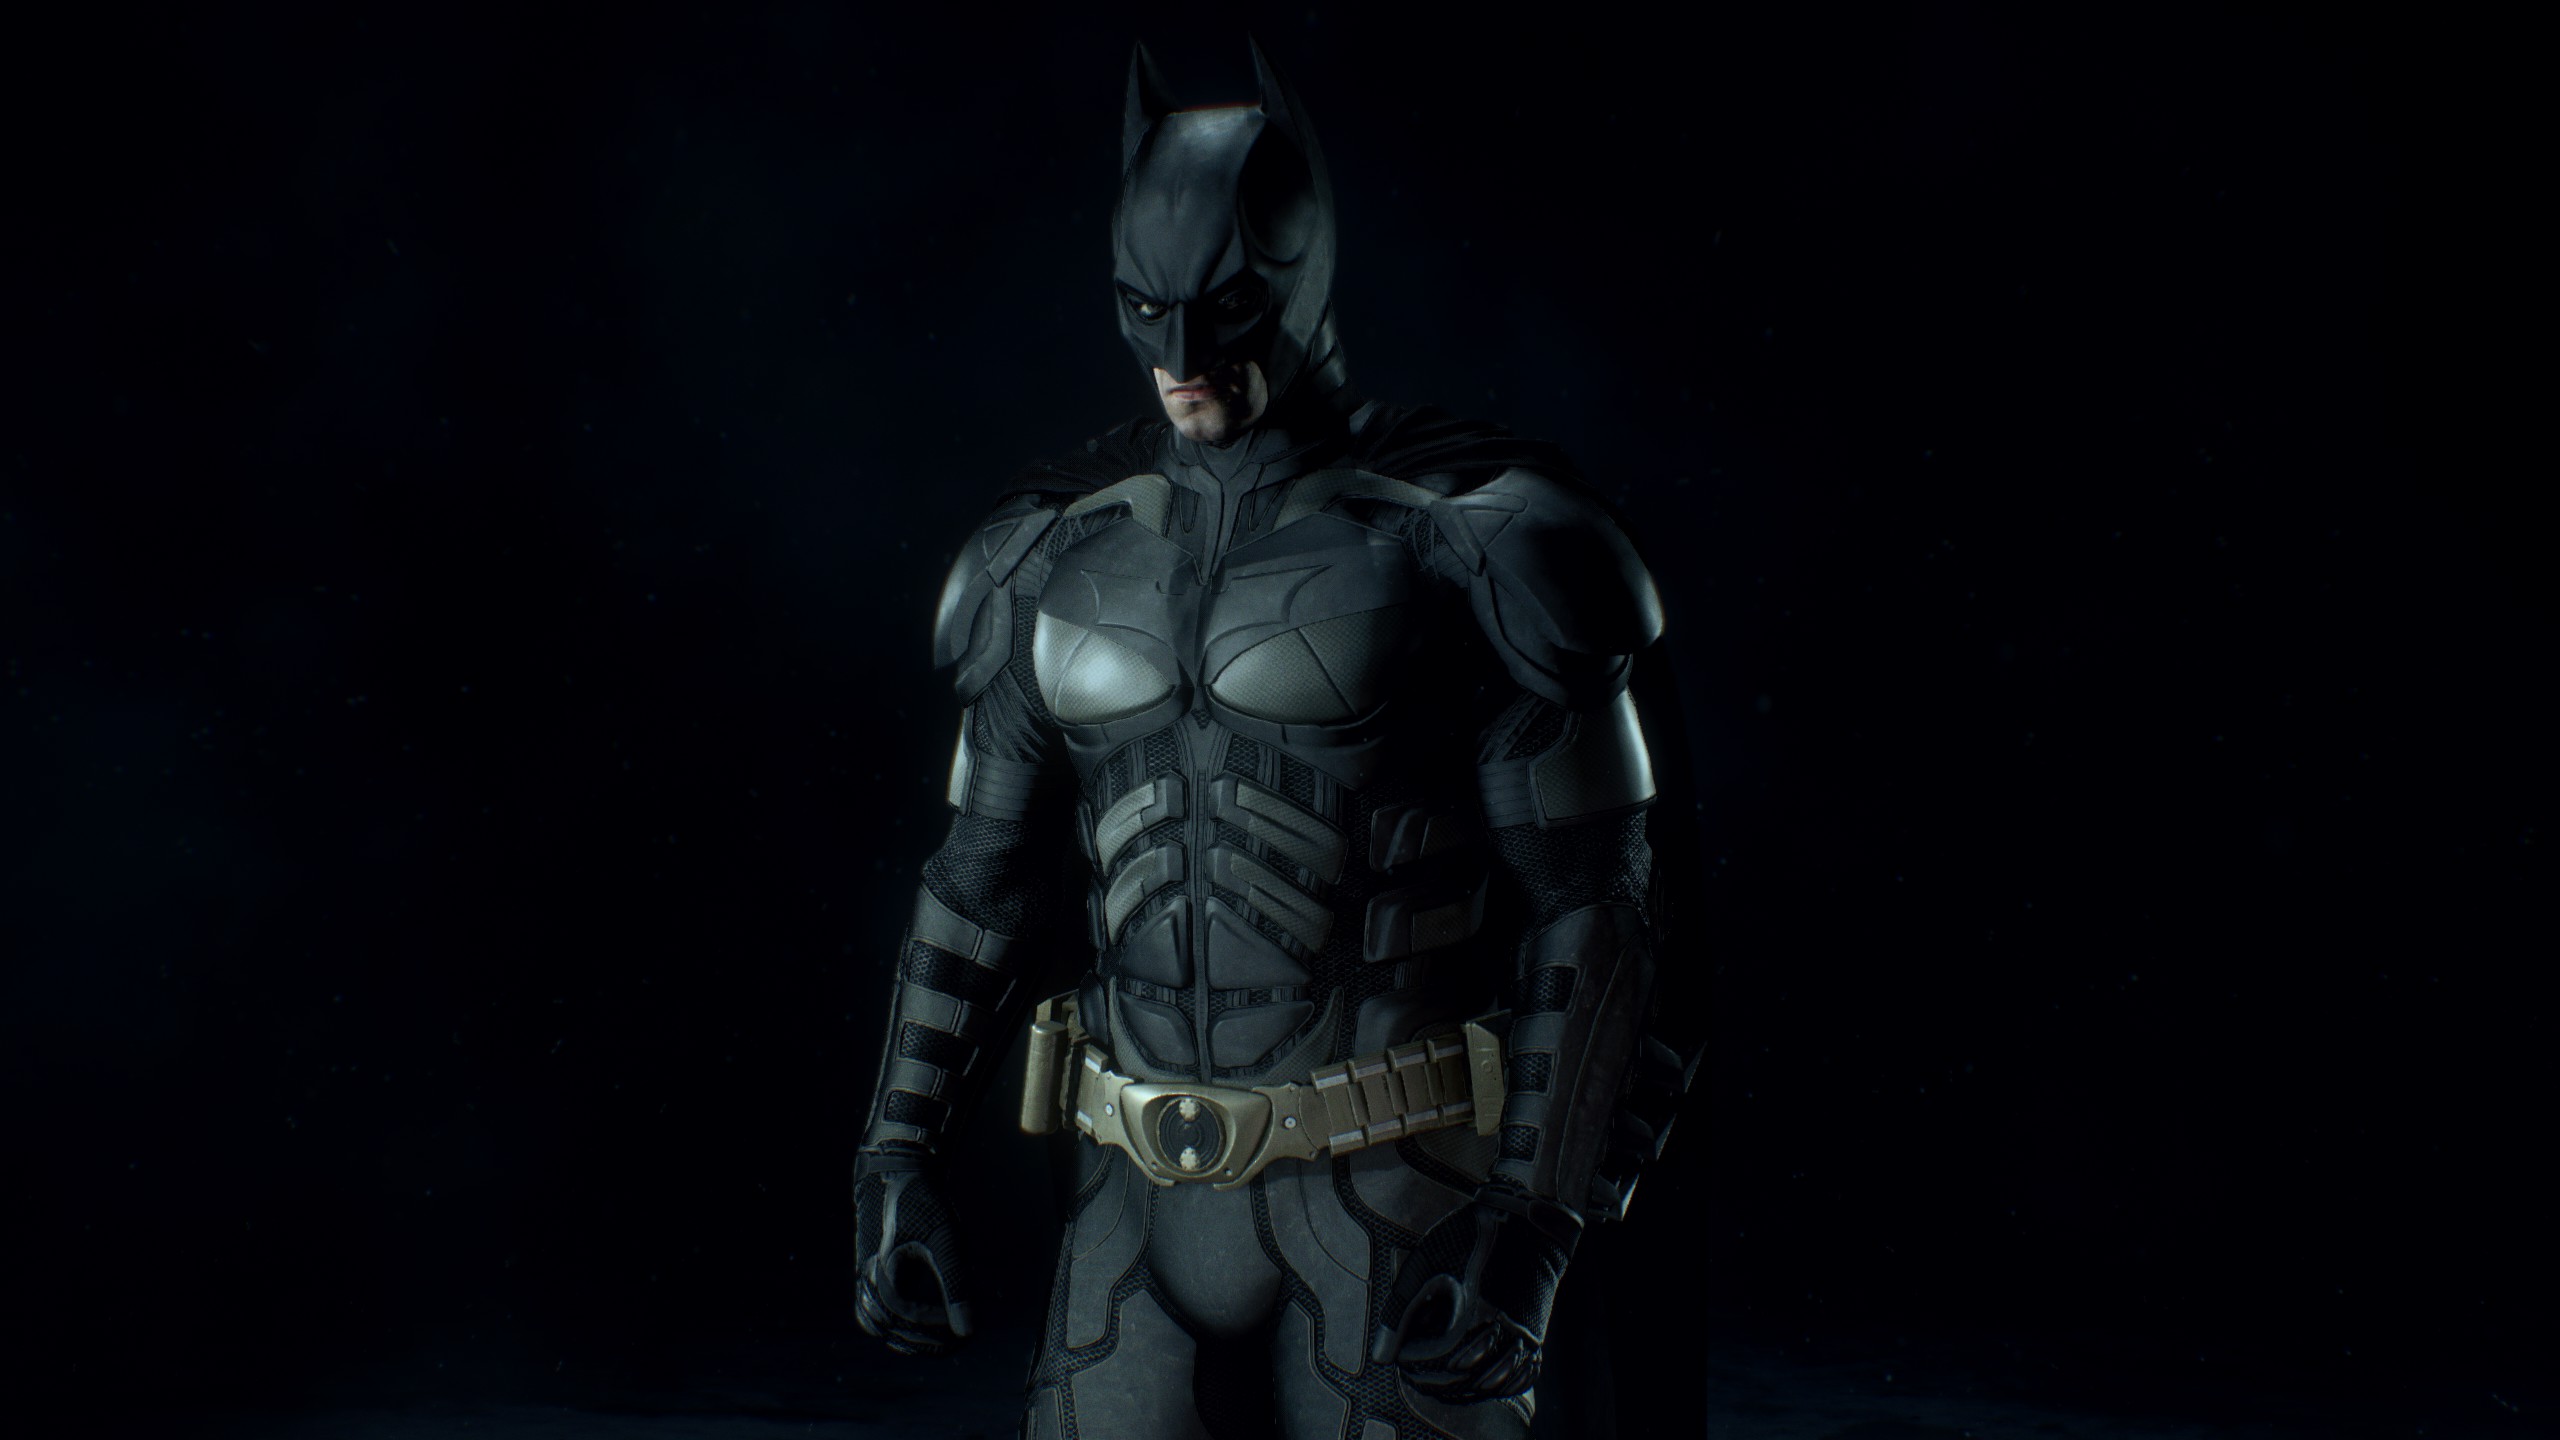 Batman Arkham Knight Dark Knight Trilogy Video Games Batman Bruce Wayne DC Comics Skins 2560x1440